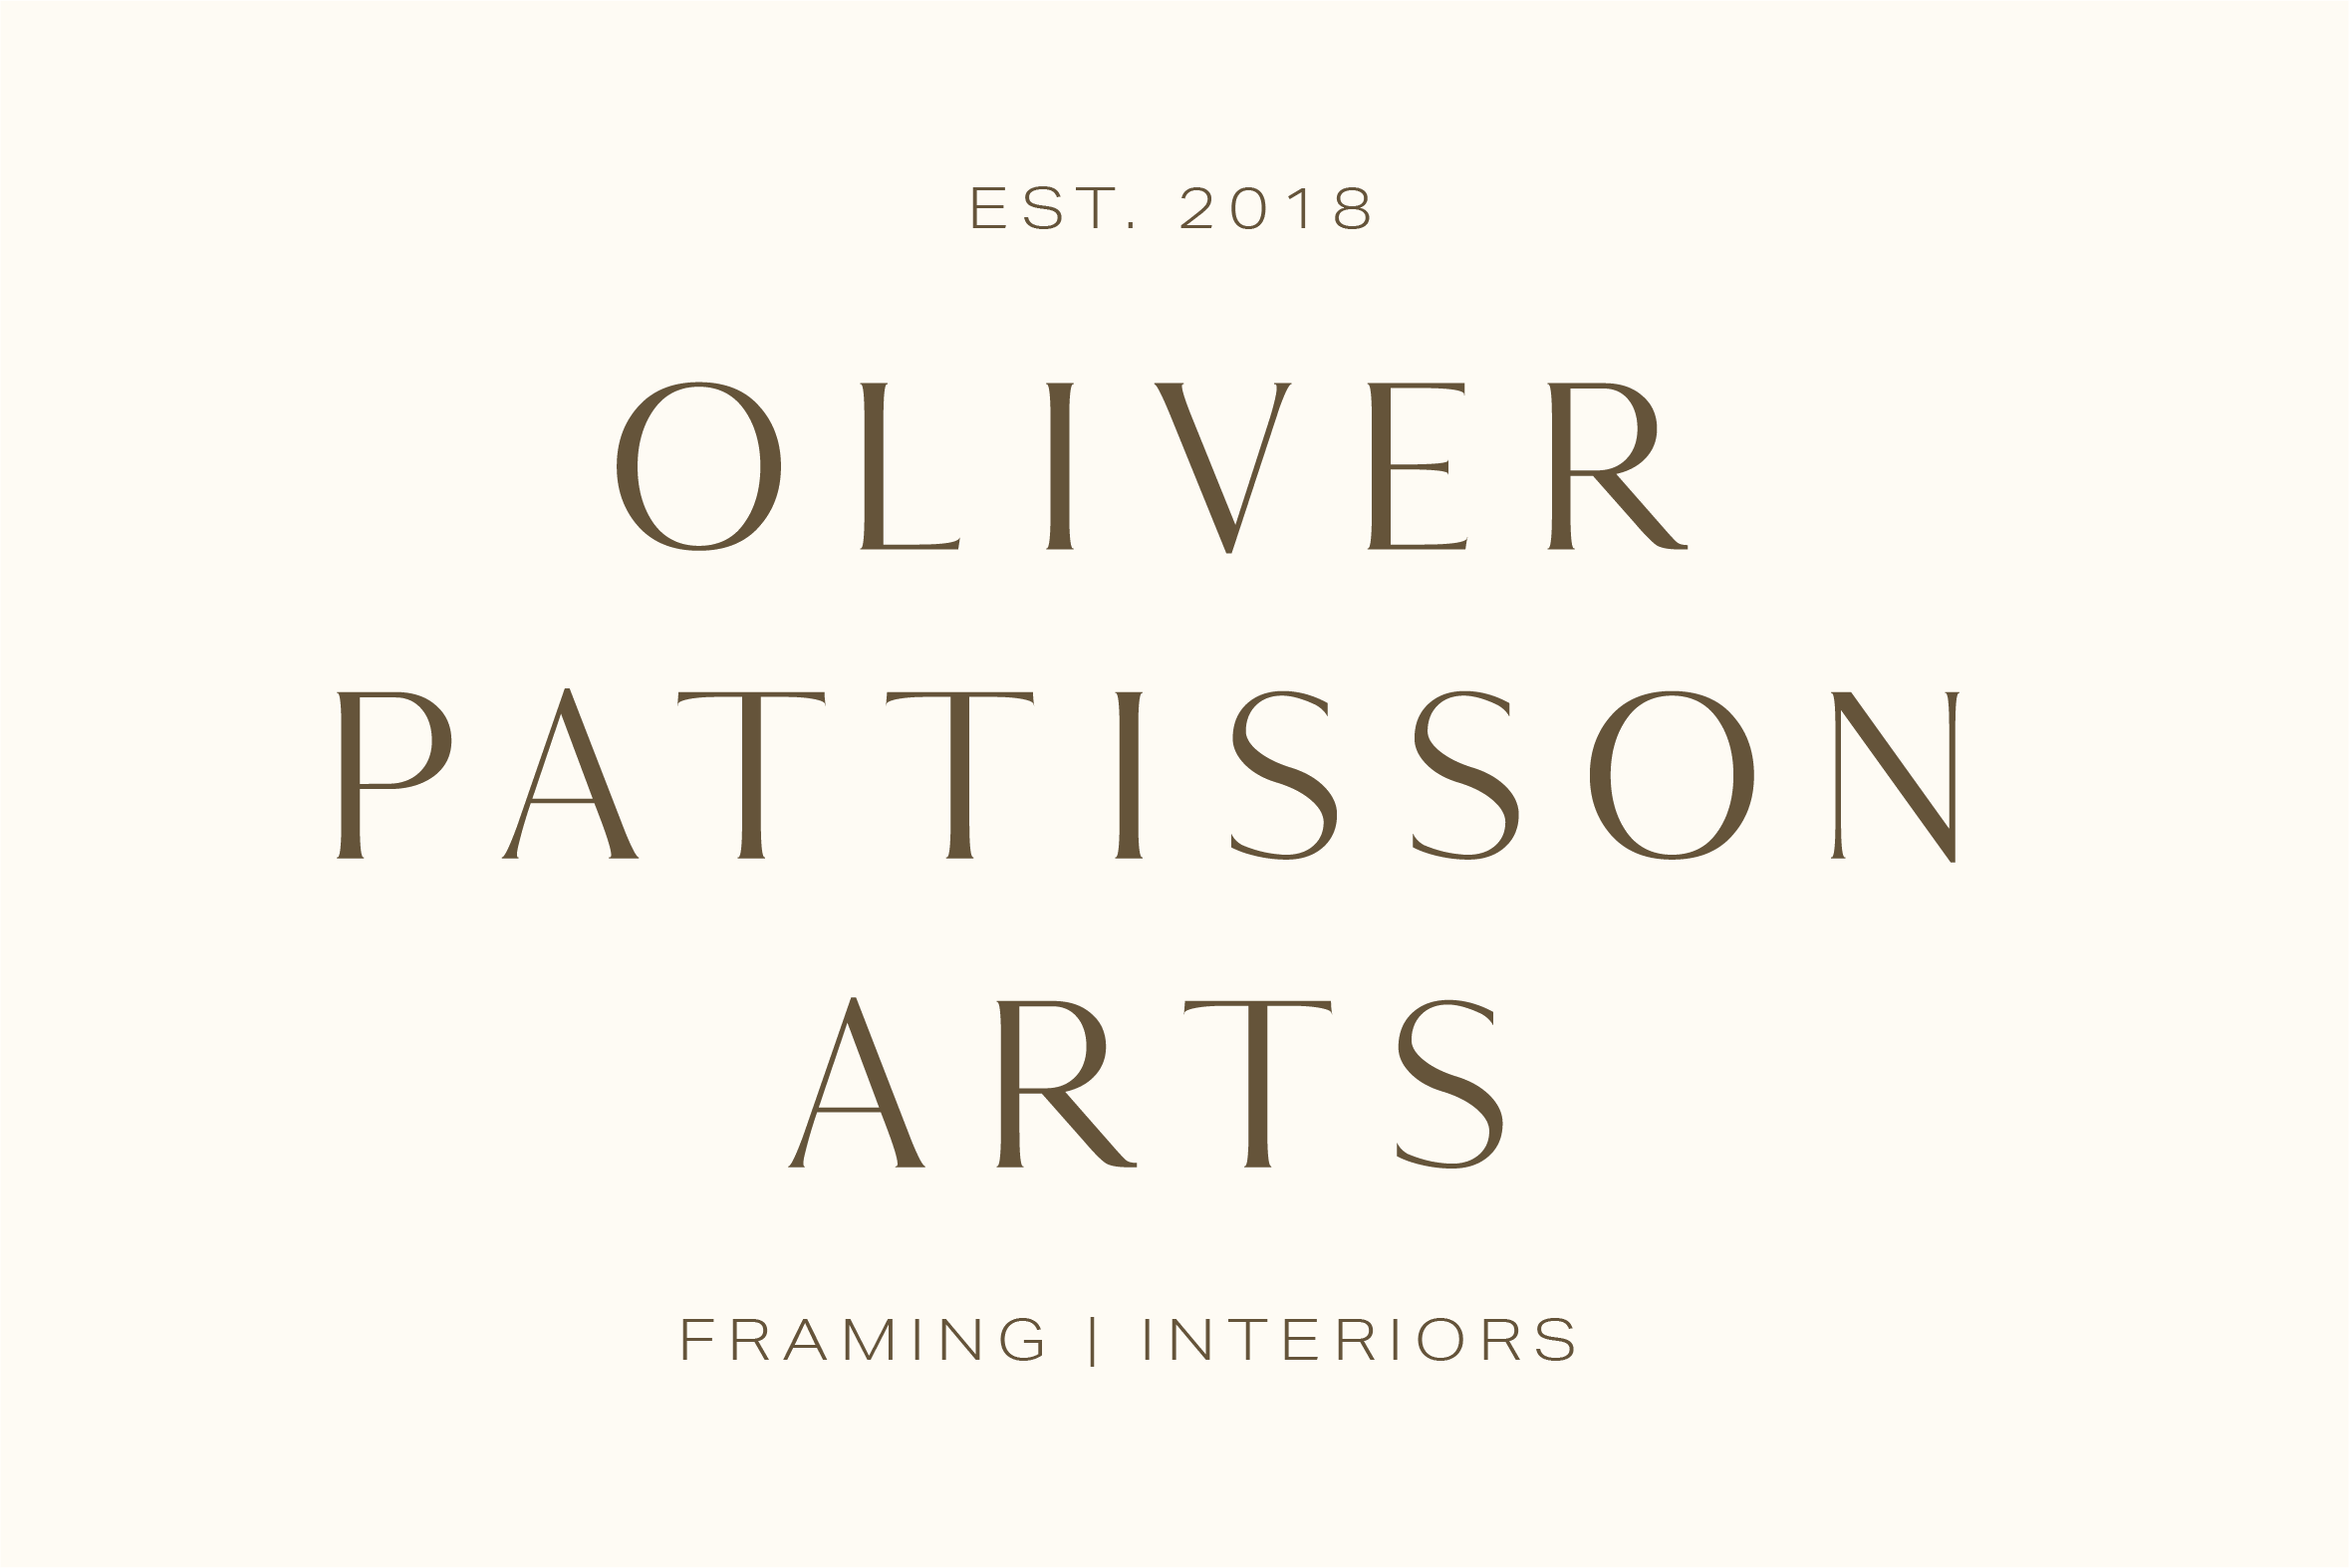 Oliver Pattisson Arts